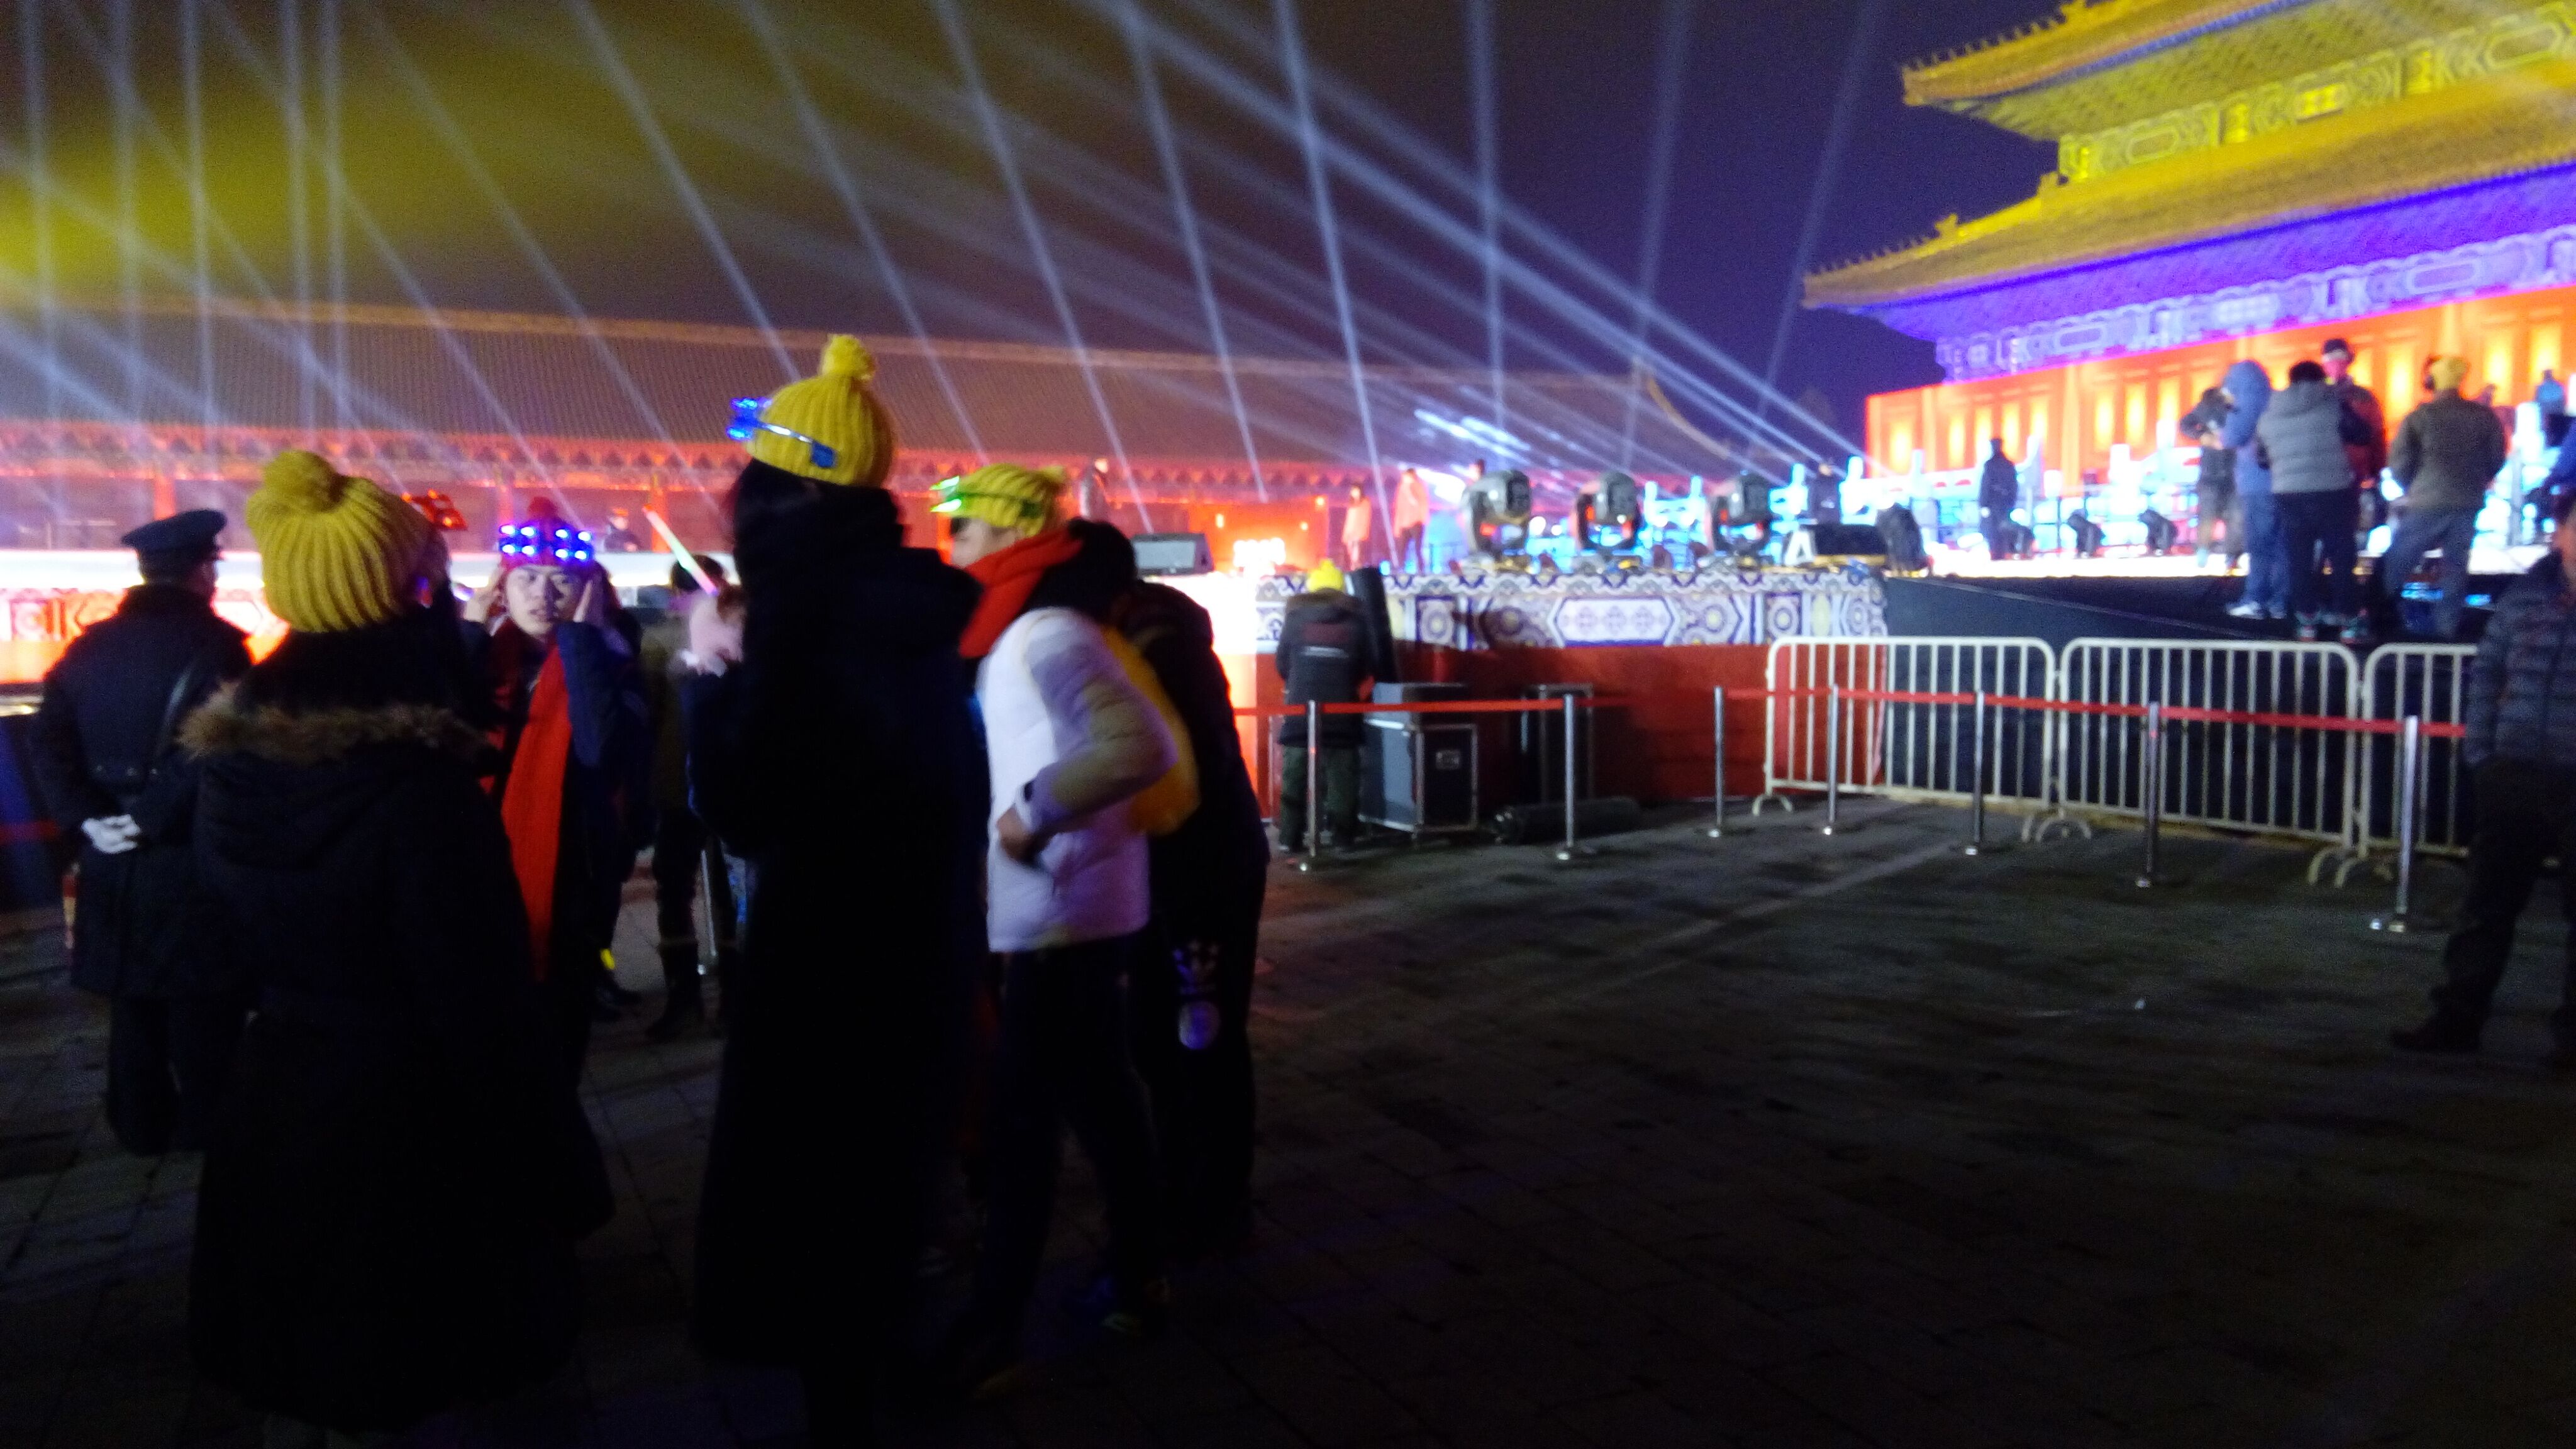 2016北京新年倒计时庆典在北京太庙隆重举行